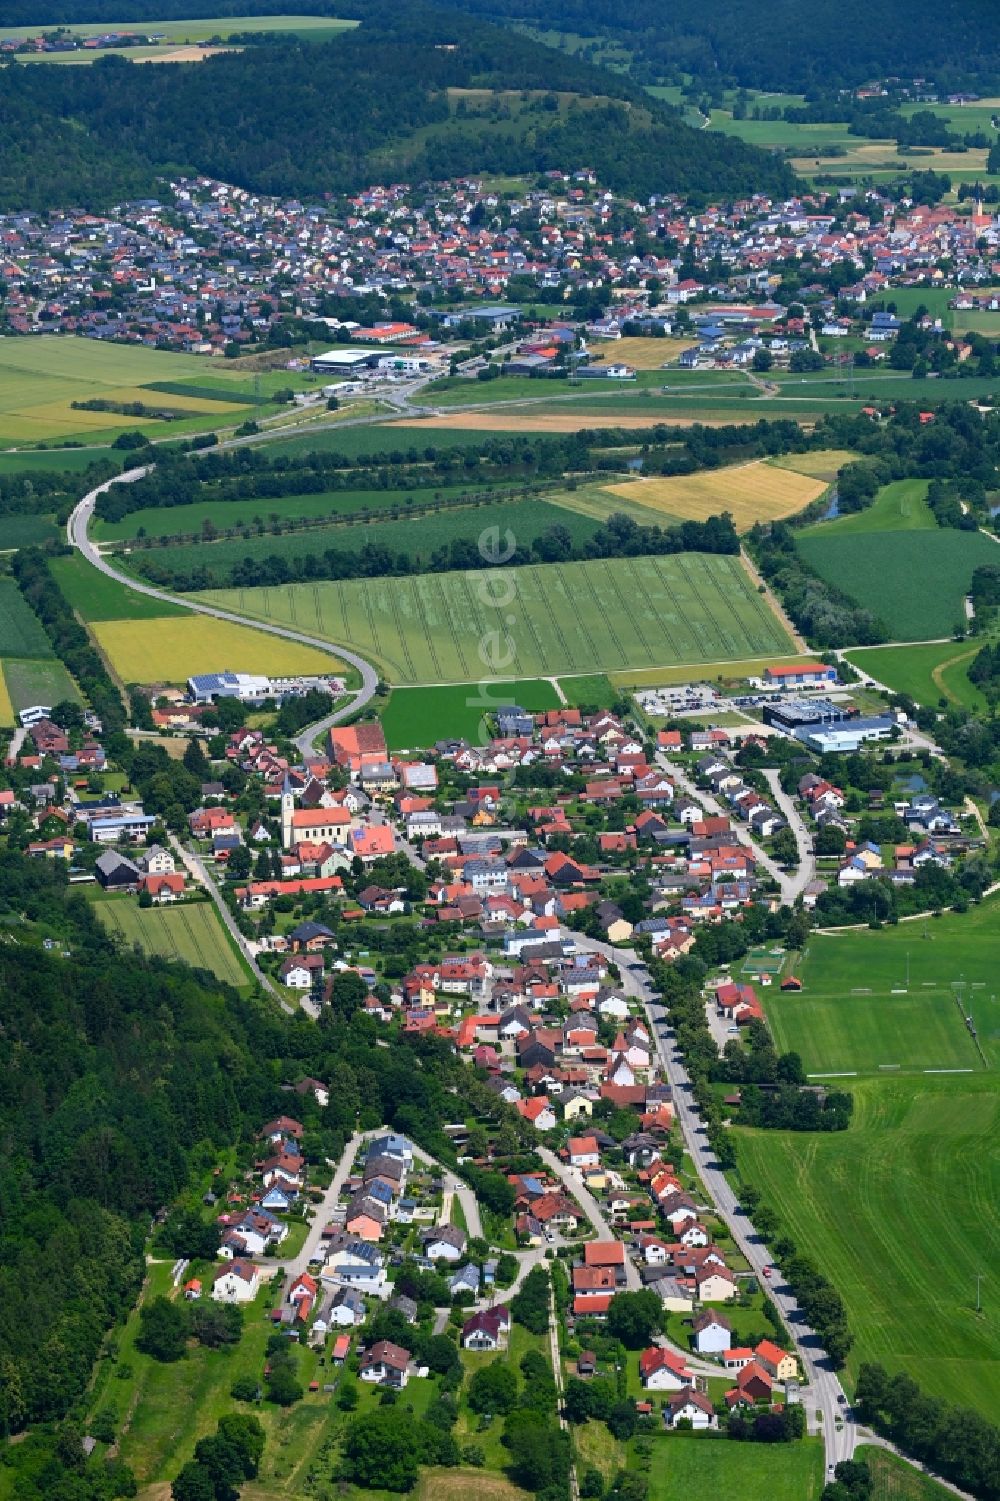 Töging von oben - Ortsansicht in Töging im Bundesland Bayern, Deutschland